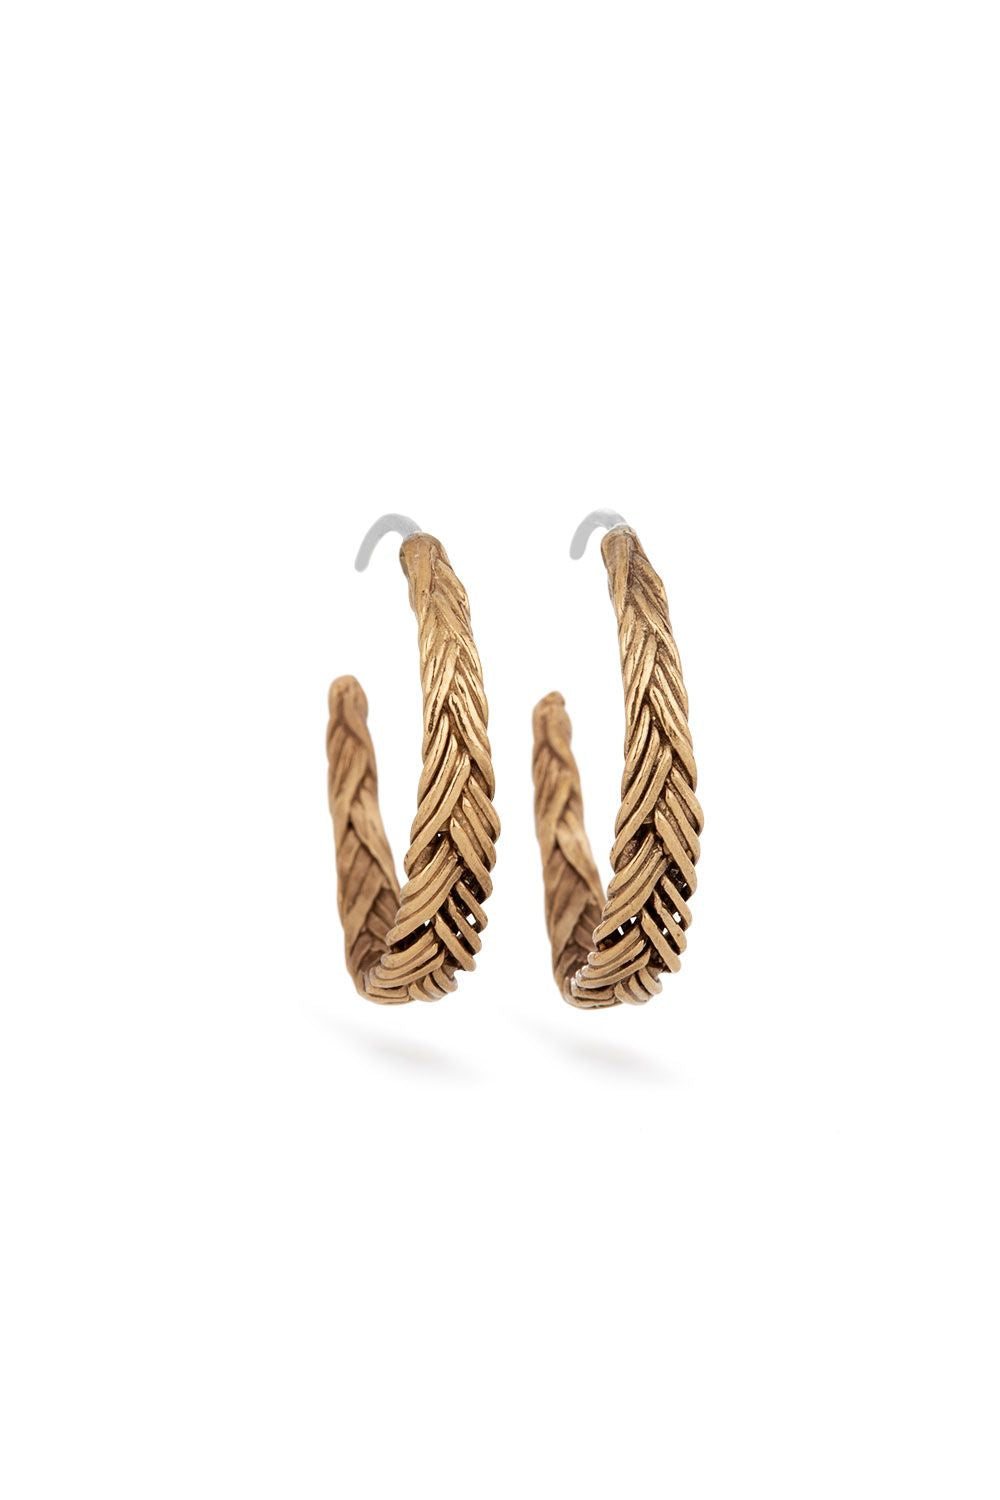 Braid Earrings - Bronze hoops small